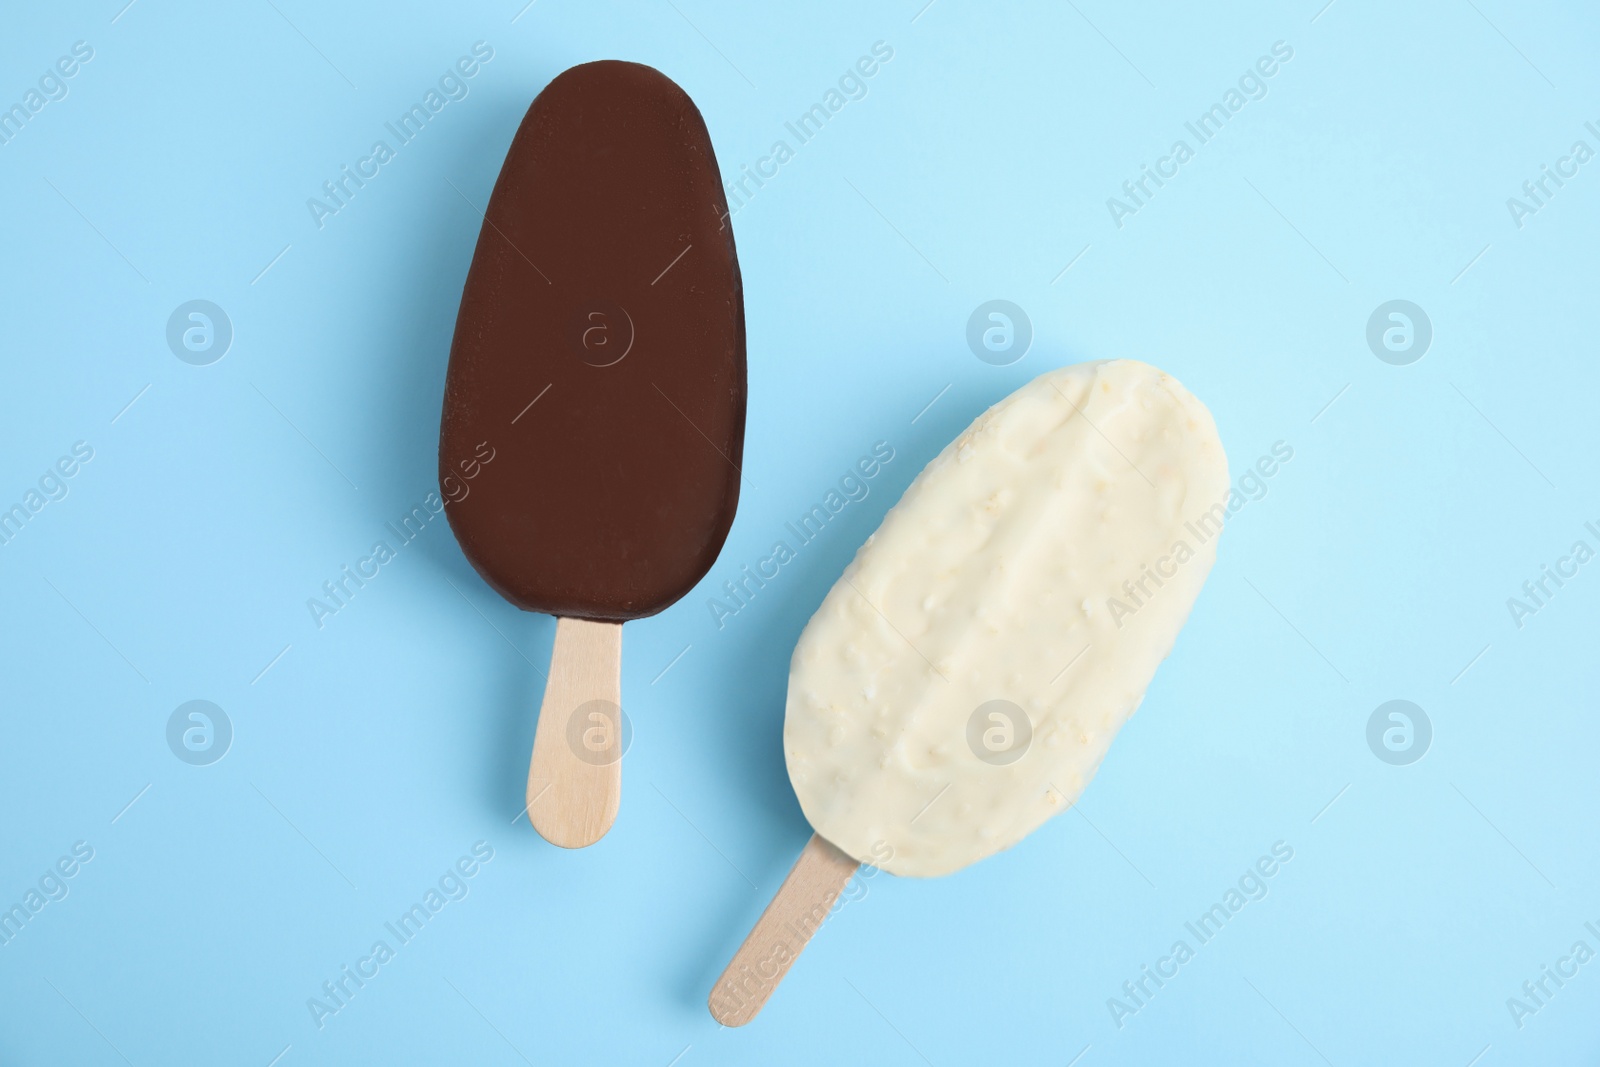 Photo of Glazed ice cream bars on light blue background, flat lay